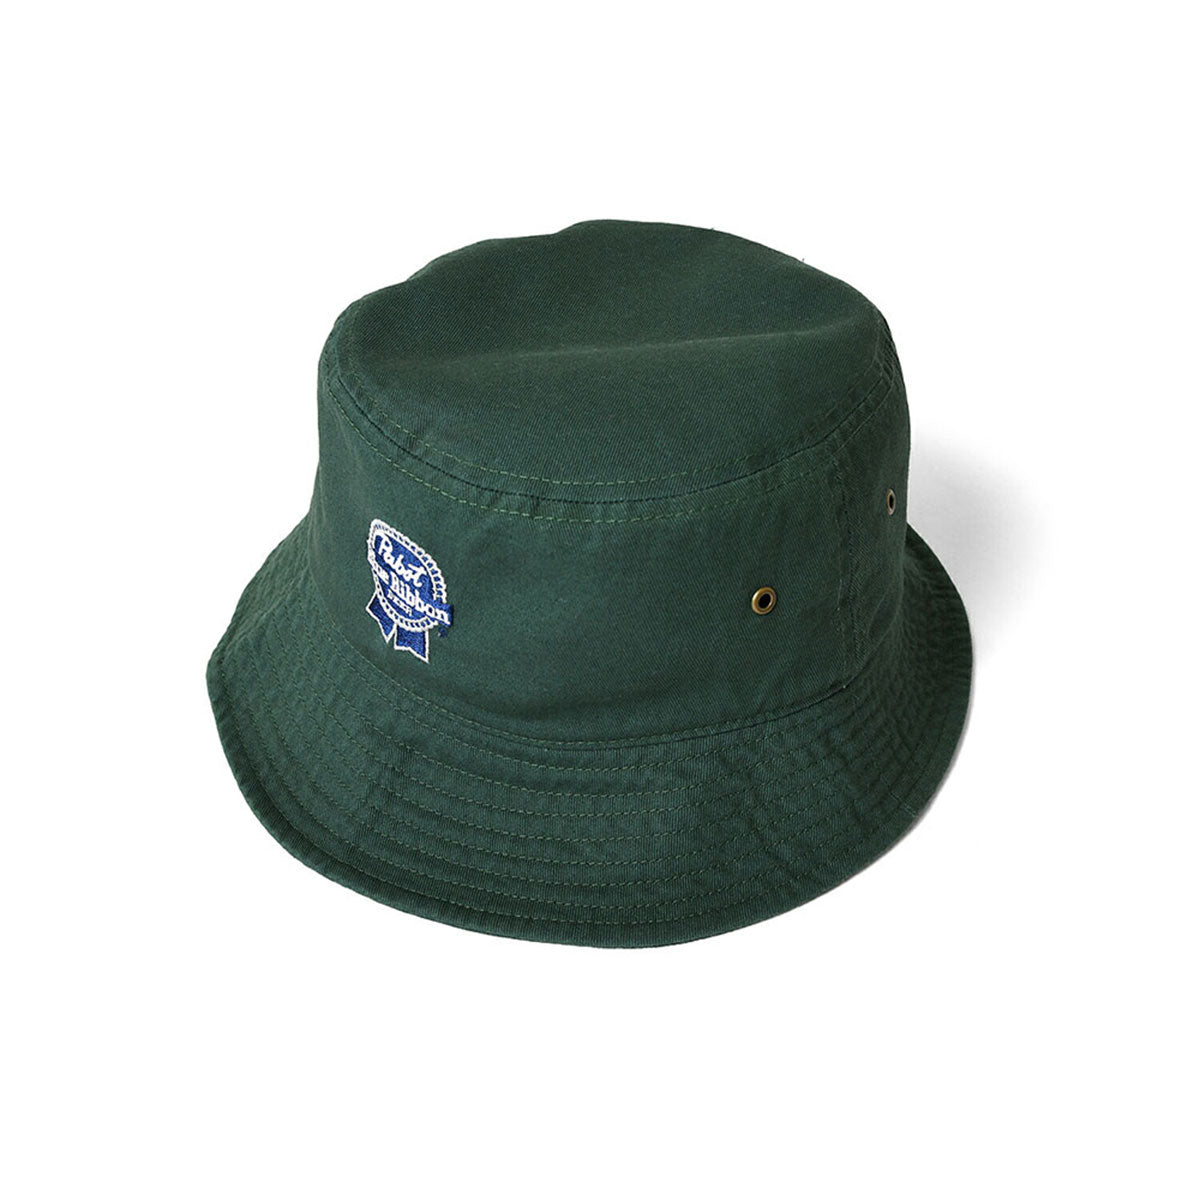 PABST 藍絲帶標誌漁夫帽 深綠色 [PB211405]